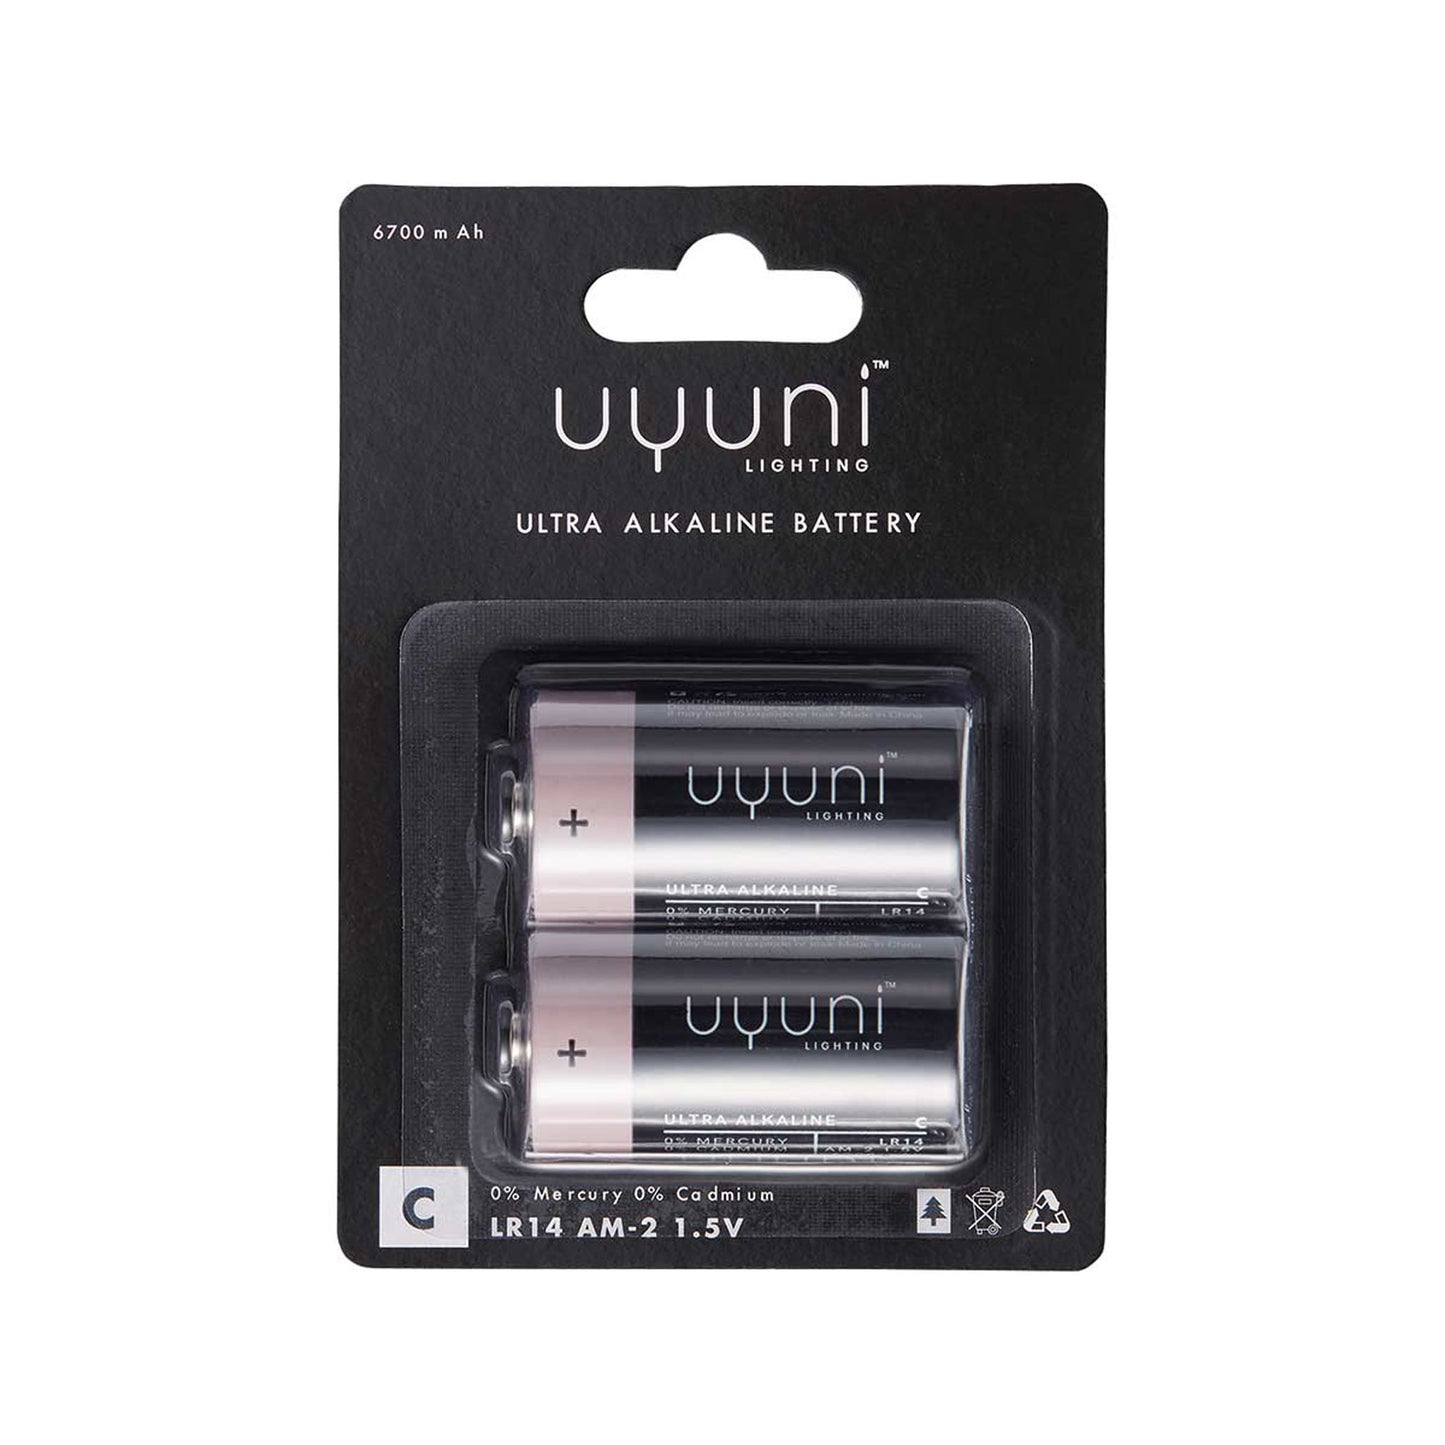 C batterier til Uyuni bloklys, 25 kr.